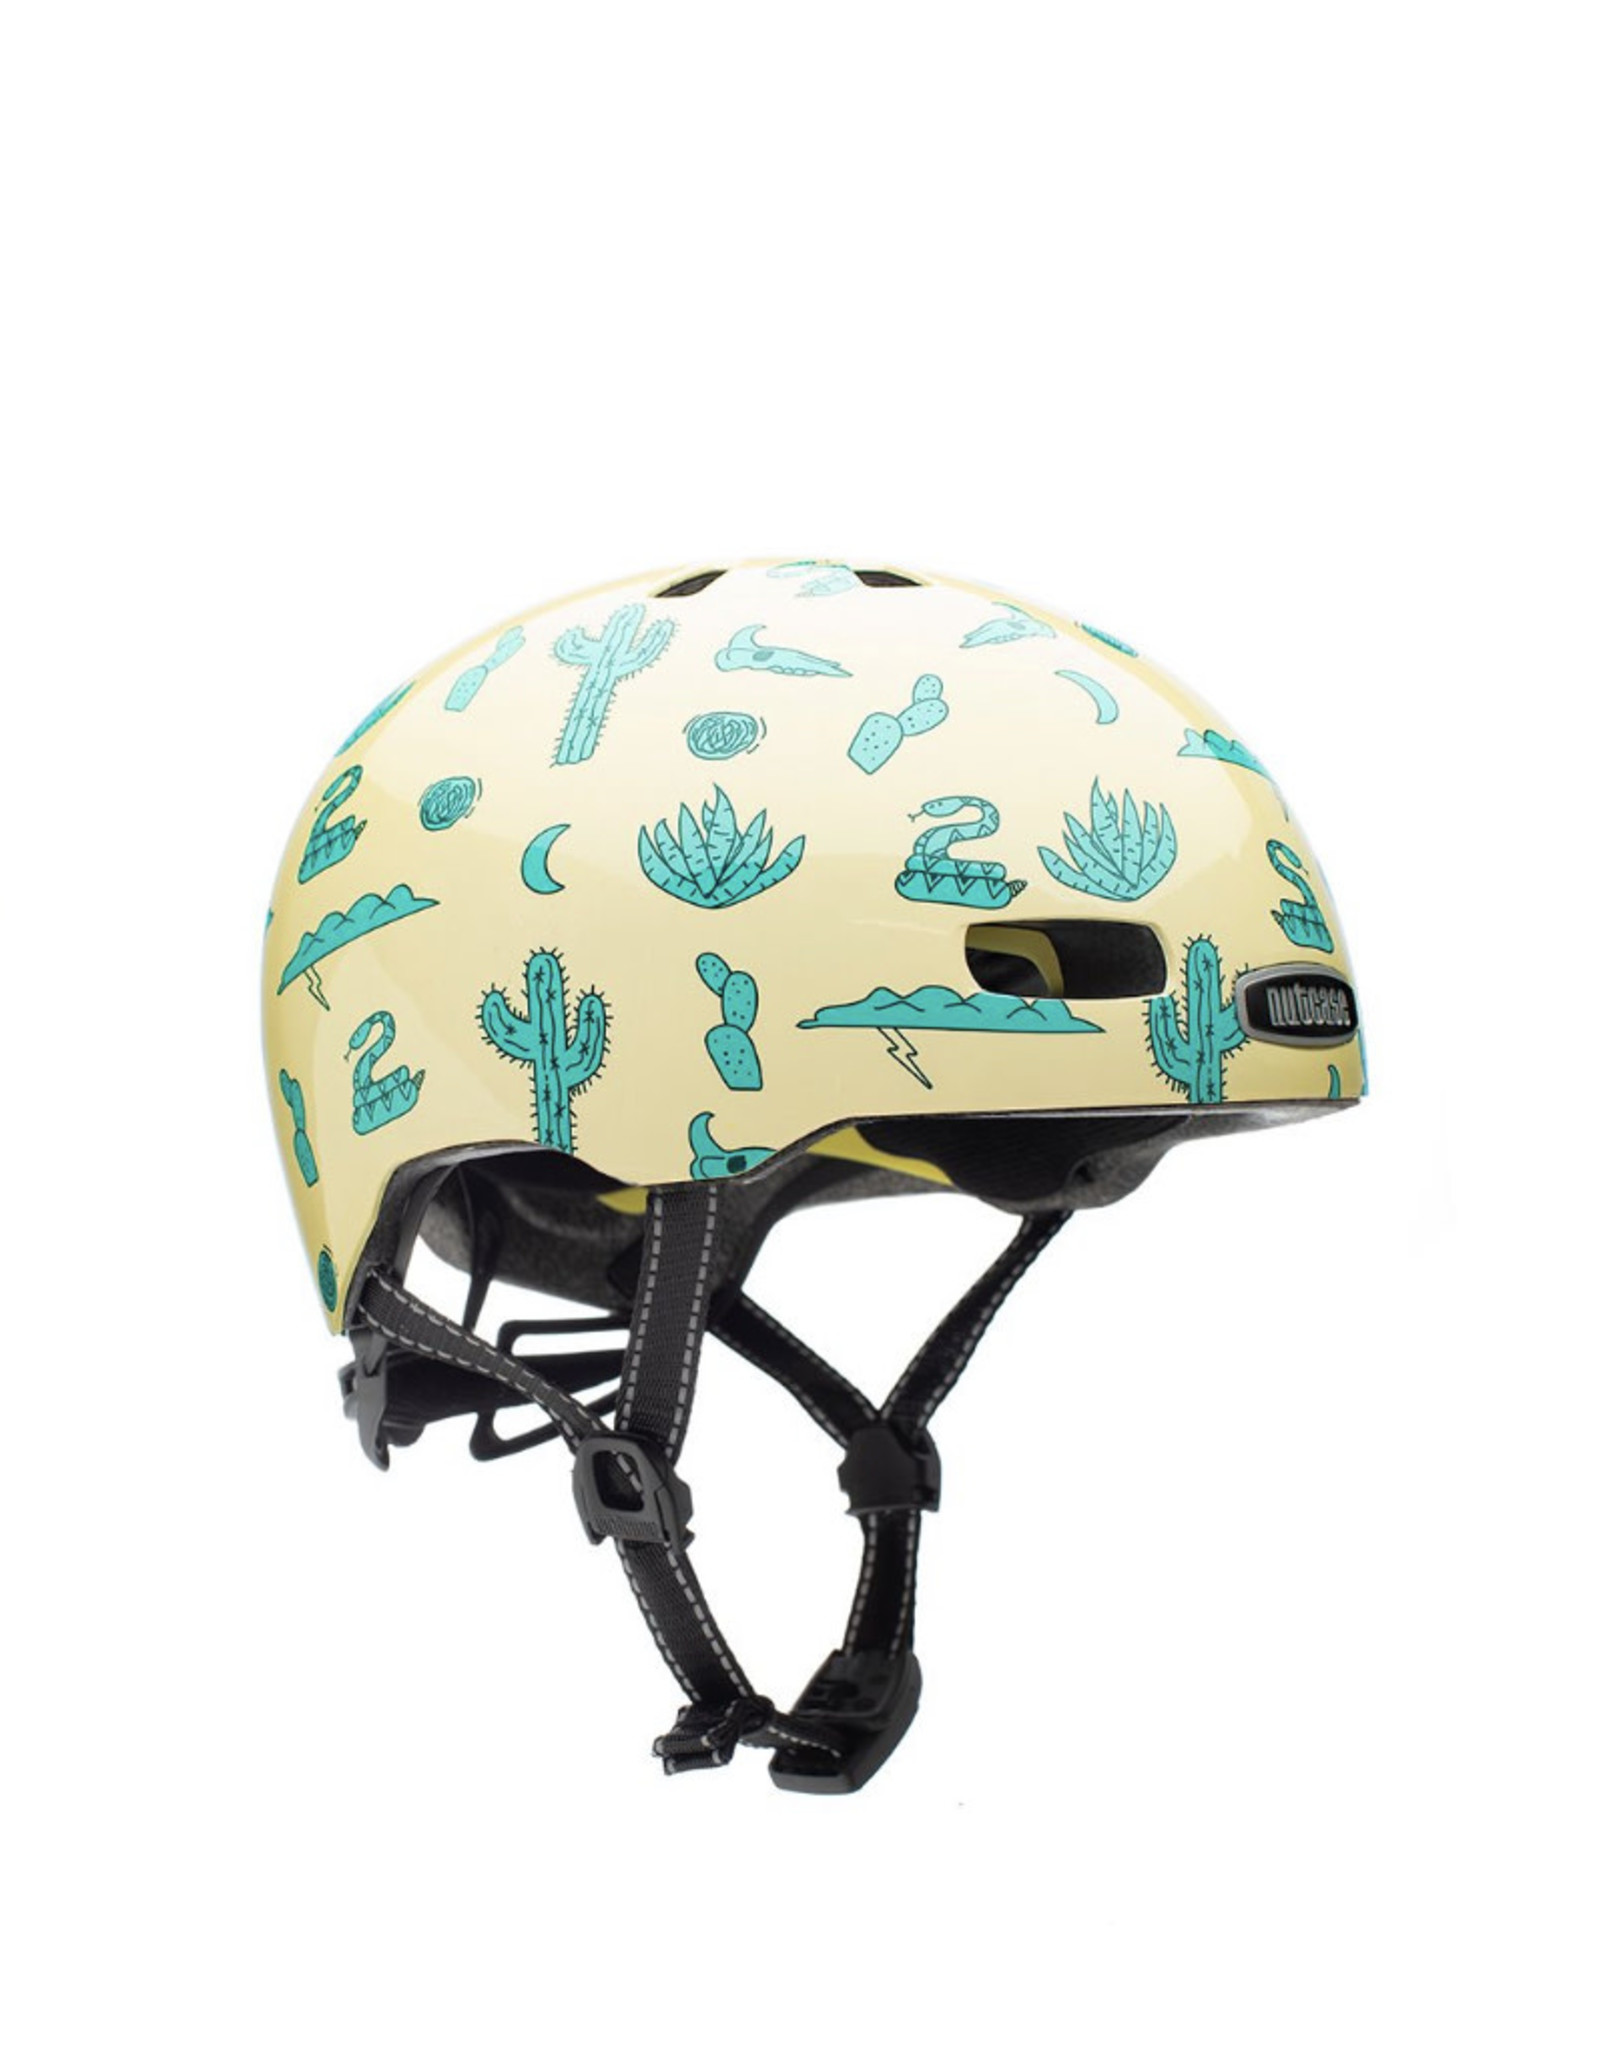 Nutcase Nutcase Street Coach Helmet MIPS helmet S